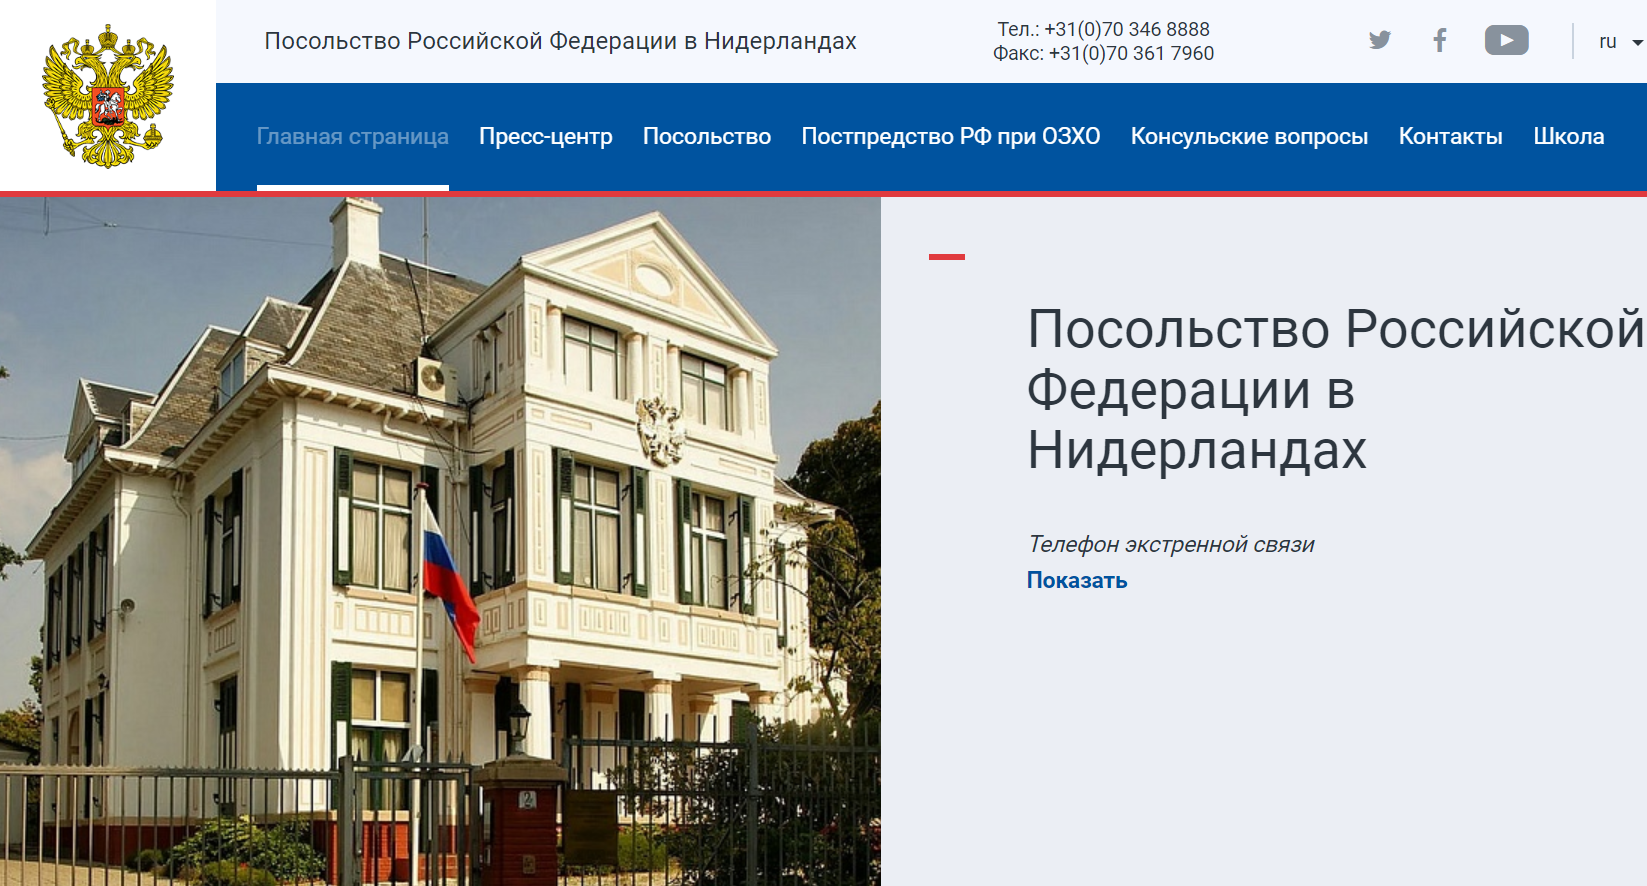 Сайт посольства РФ в Нидерландах. Скриншот